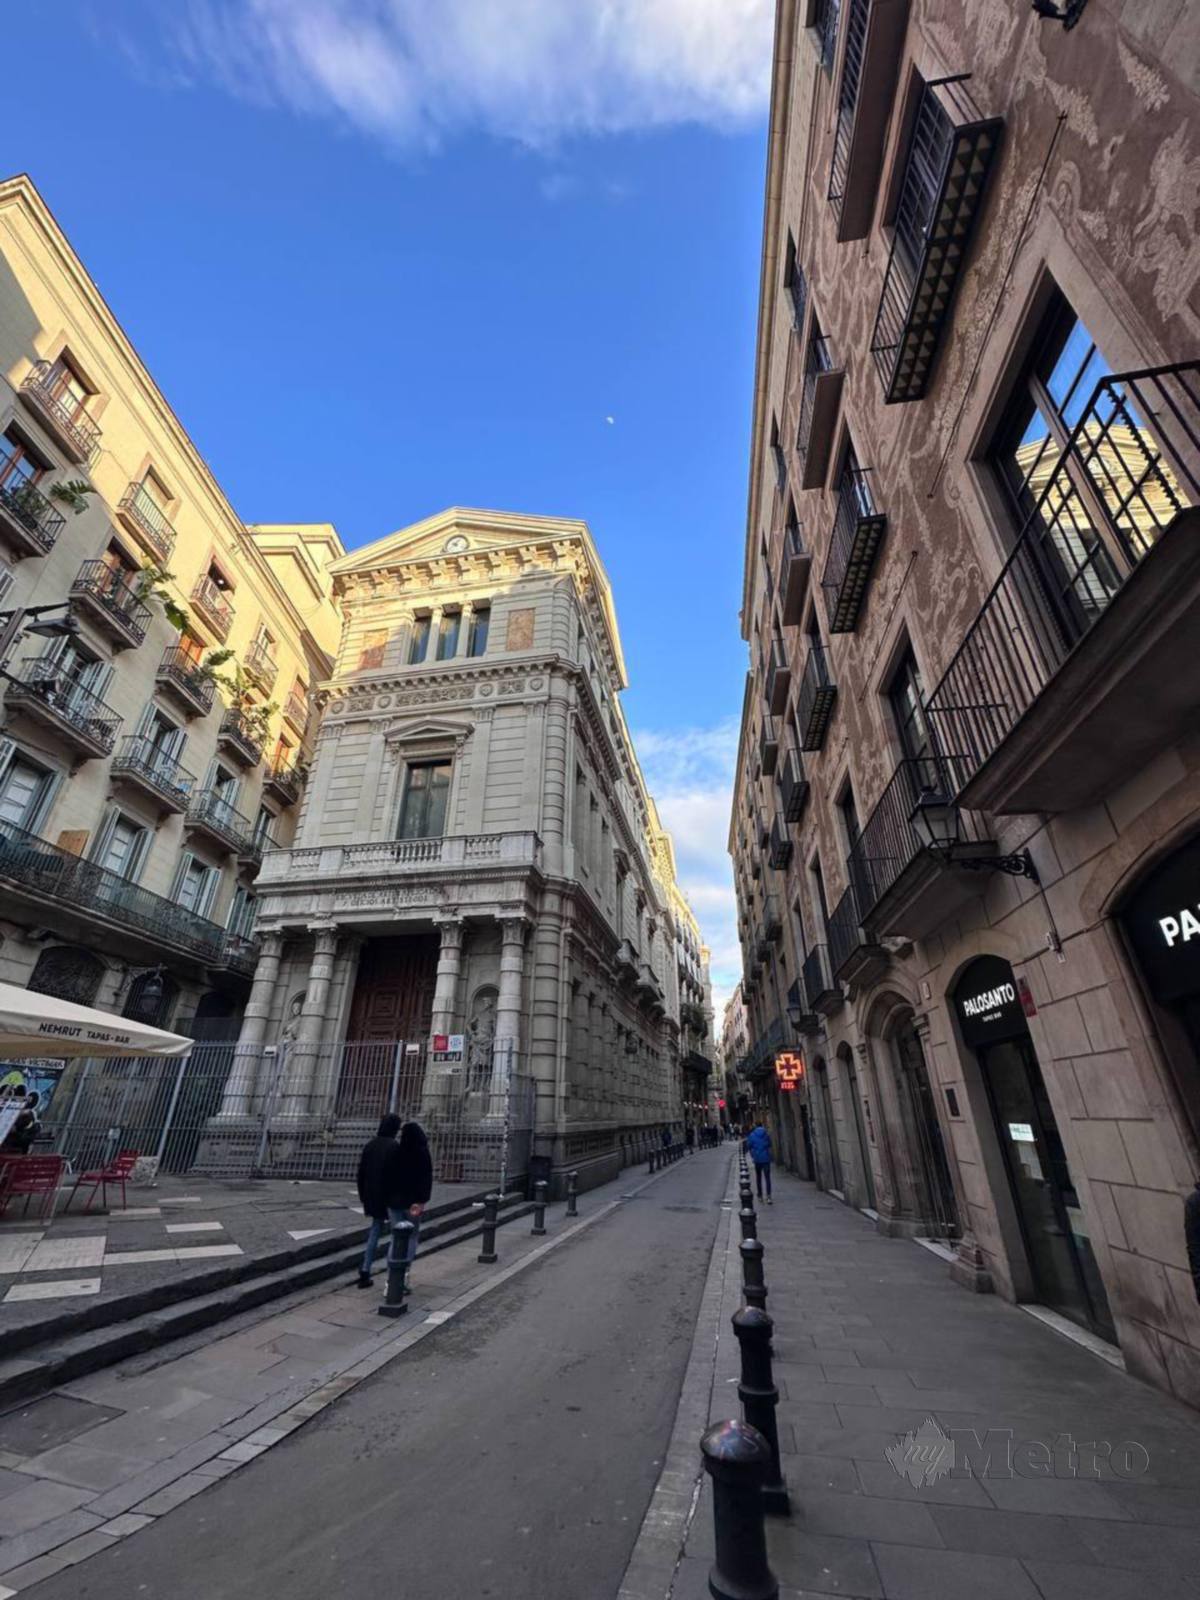 BAHAGIAN kiri dan kanan laluan pejalan kaki La Rambla ada banyak kedai cenderahati termasuk ‘kedai kopi’ untuk menikmati pemandangan kota Barcelona. 